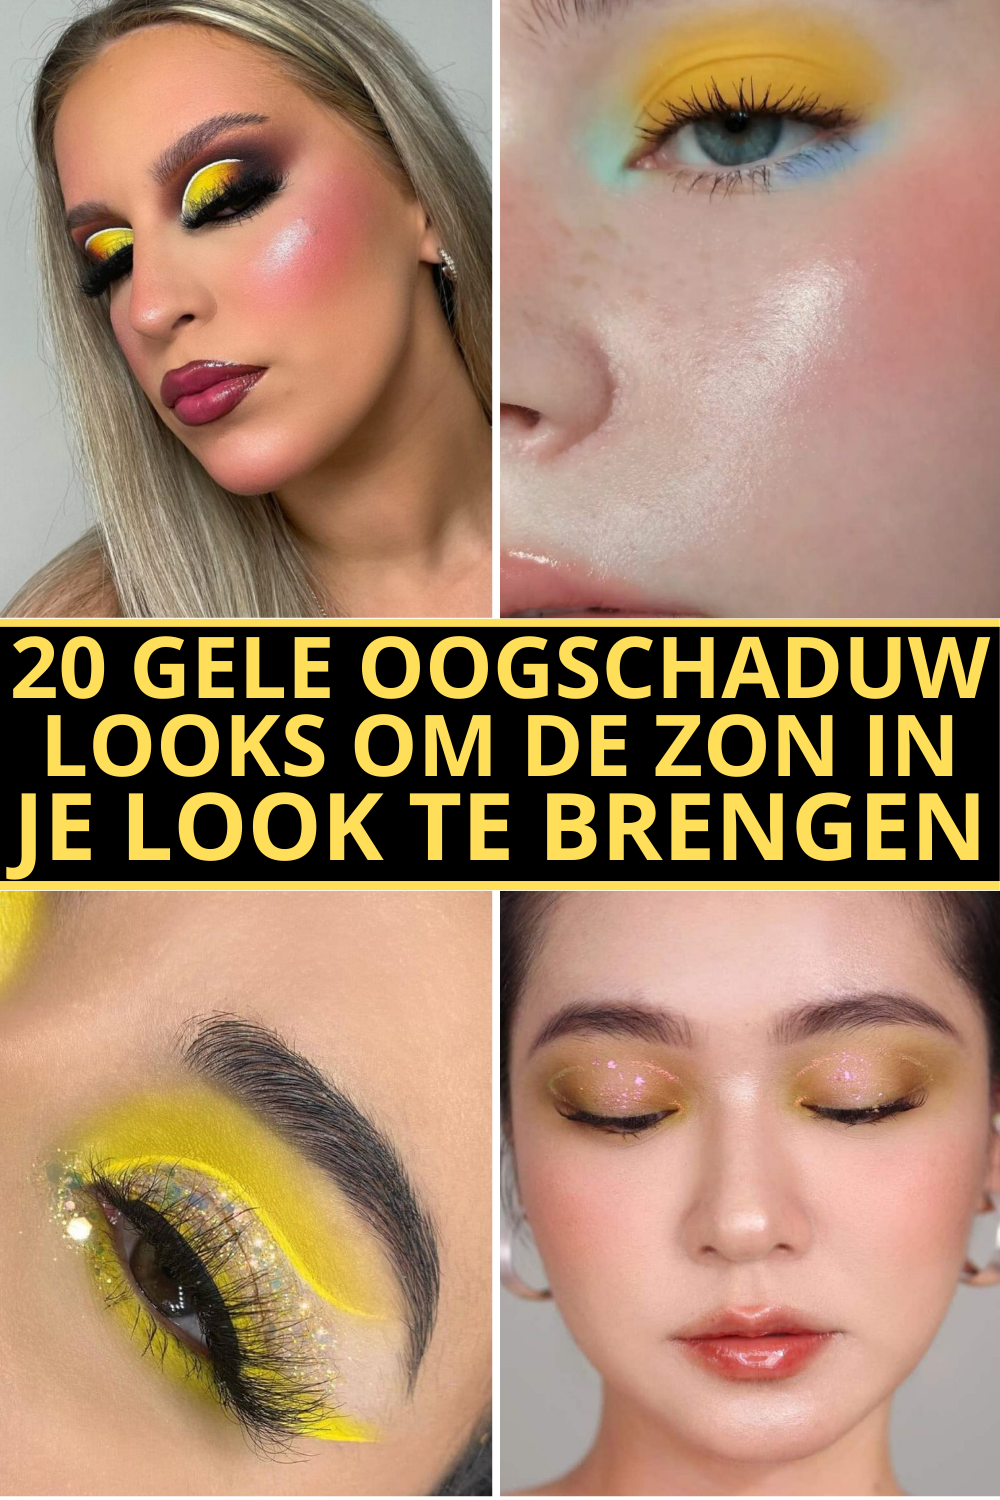 20 Gele Oogschaduw Looks Om De Zon In Je Look Te Brengen